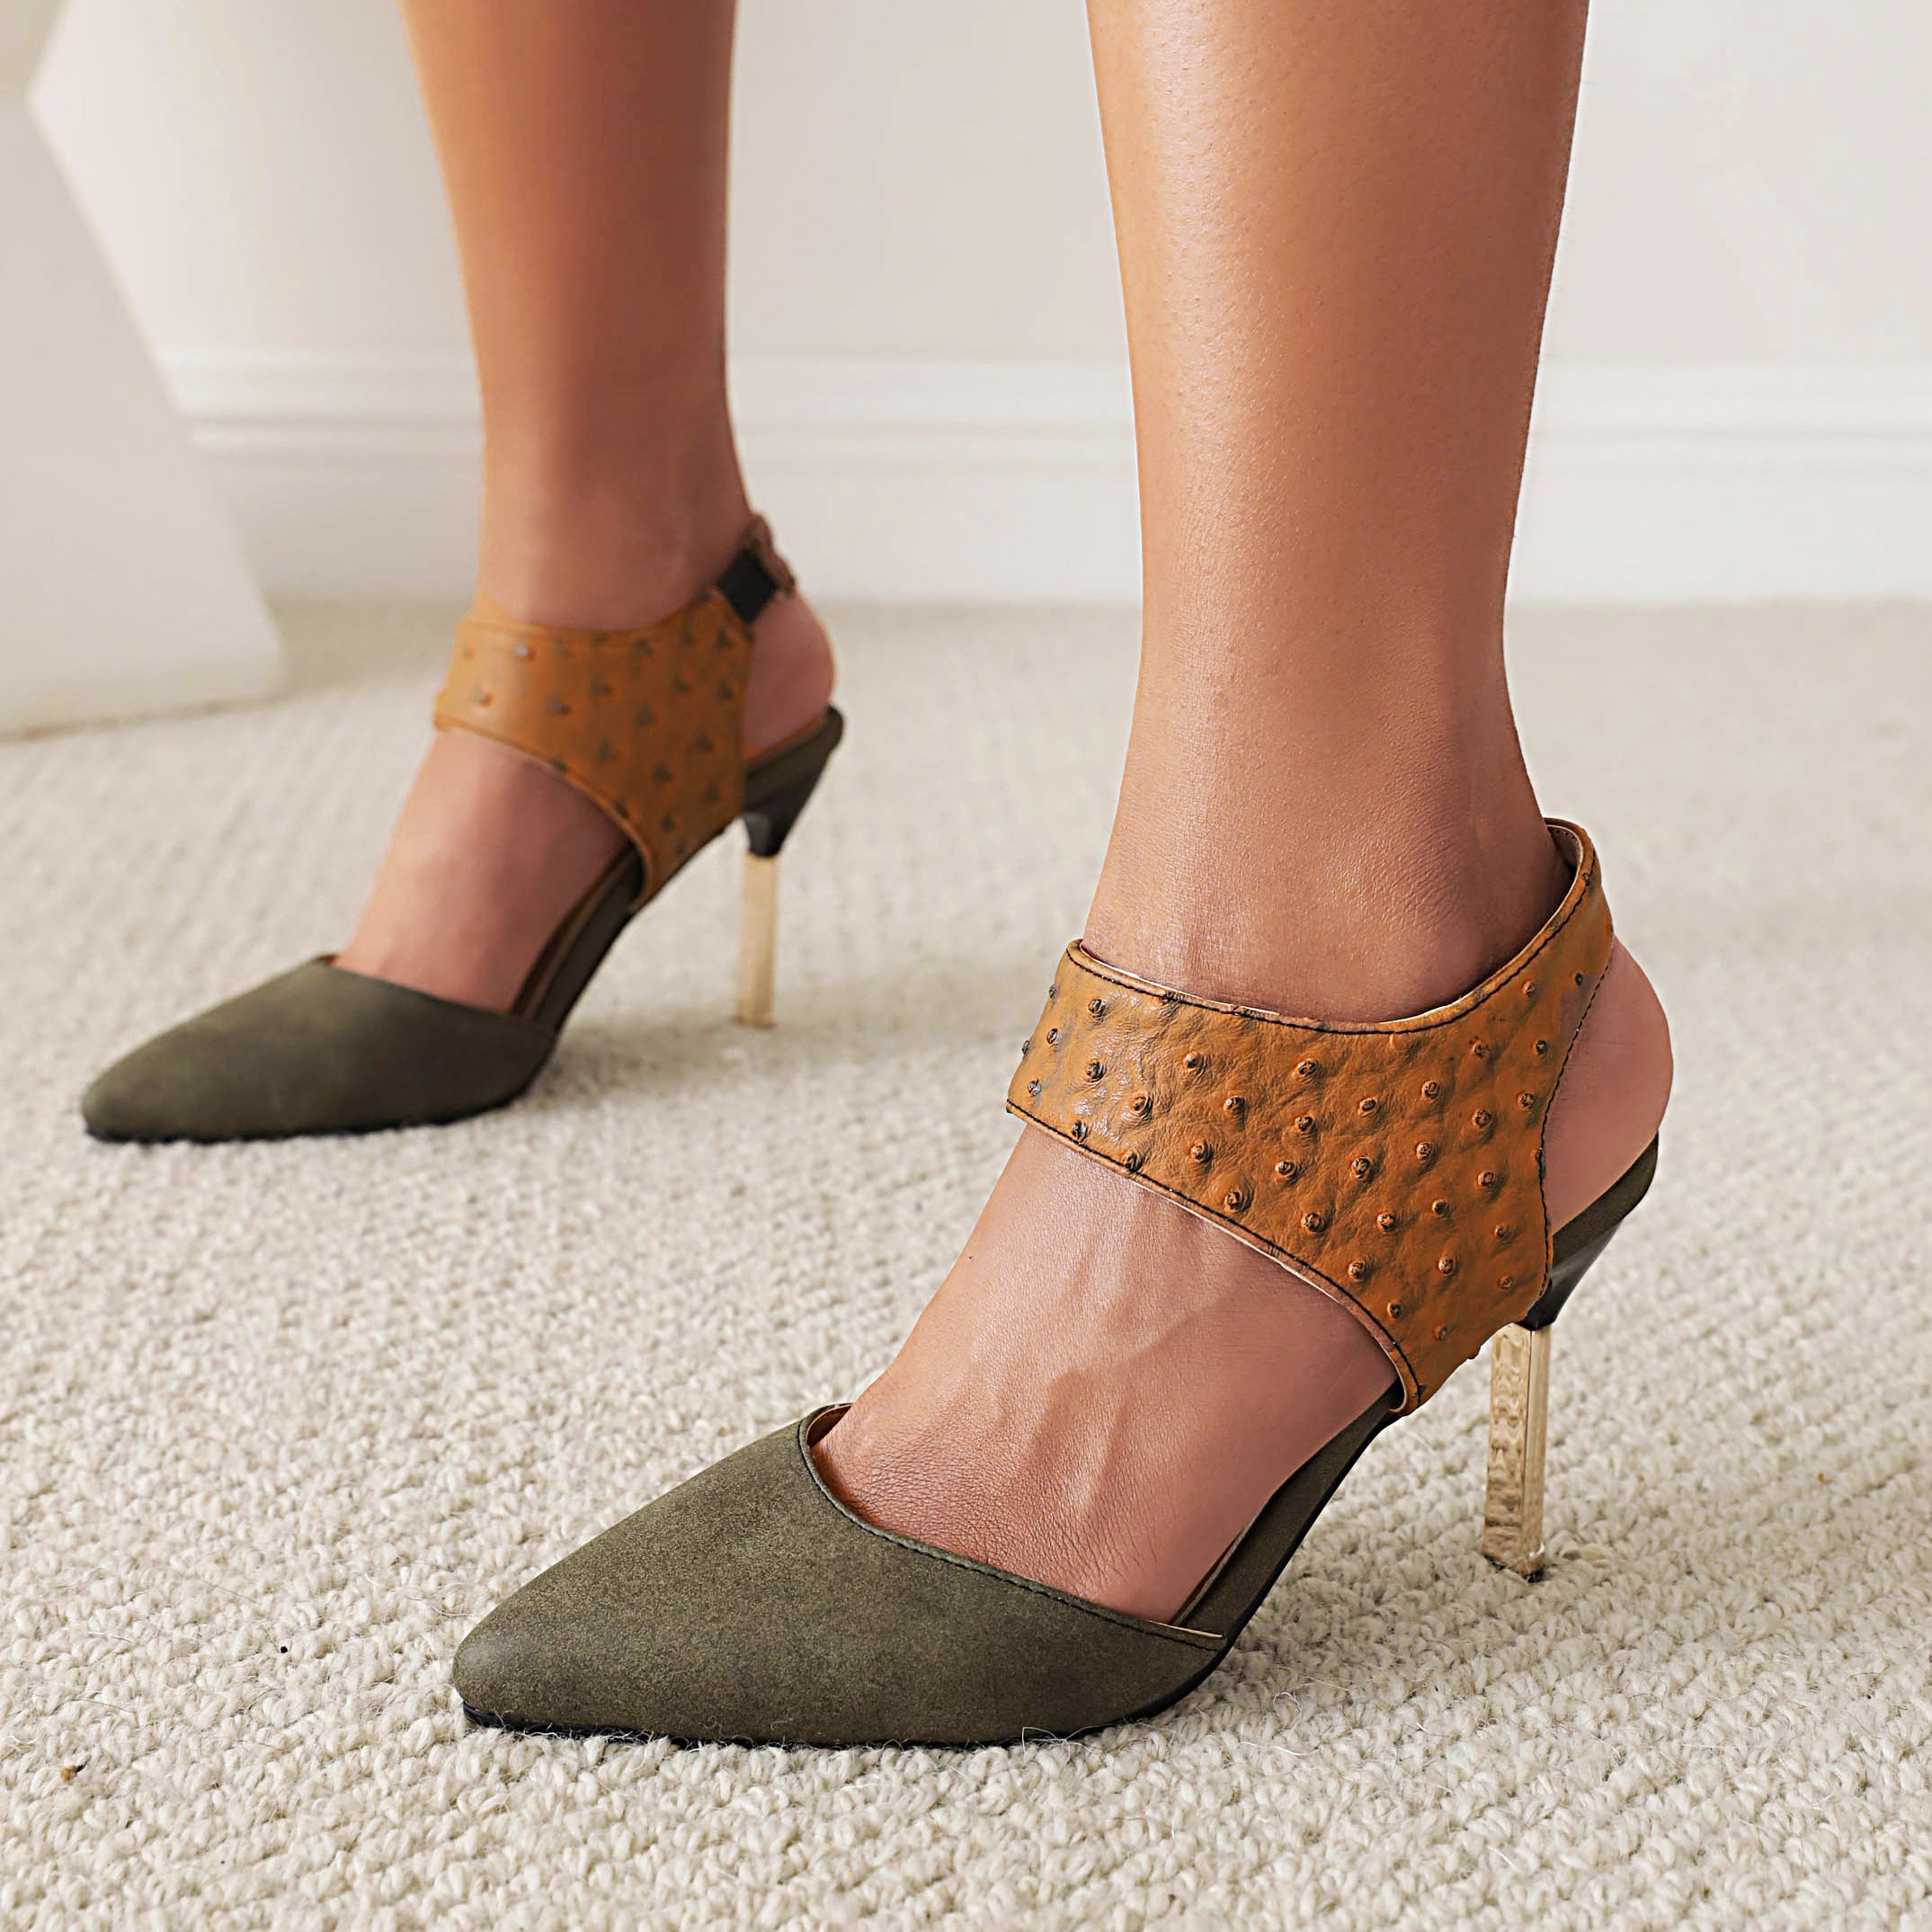 Bigsizeheels Slingback Peep Toe Stiletto Heel Sandals - Green best oversized womens heels are from bigsizeheel®